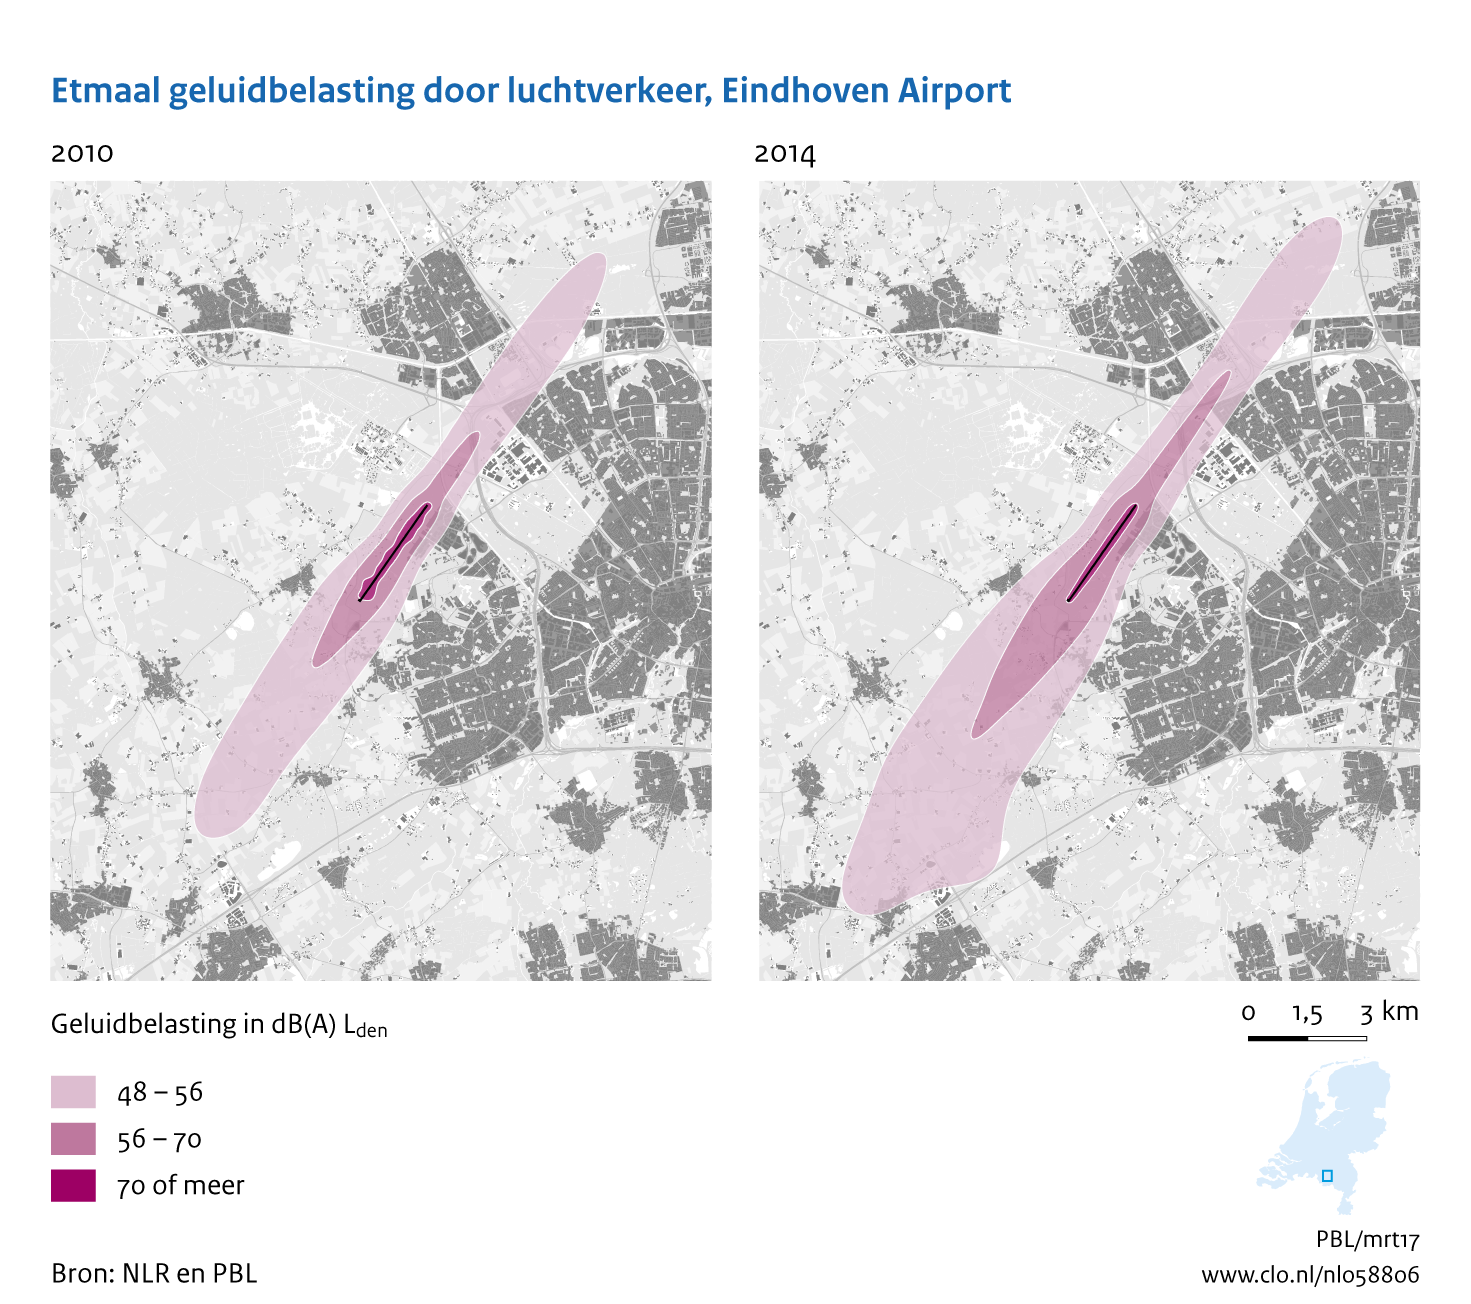 Figuur Etmaal geluidbelasting door luchtvaart, Eindhoven Airport, 2010-2014. In de rest van de tekst wordt deze figuur uitgebreider uitgelegd.